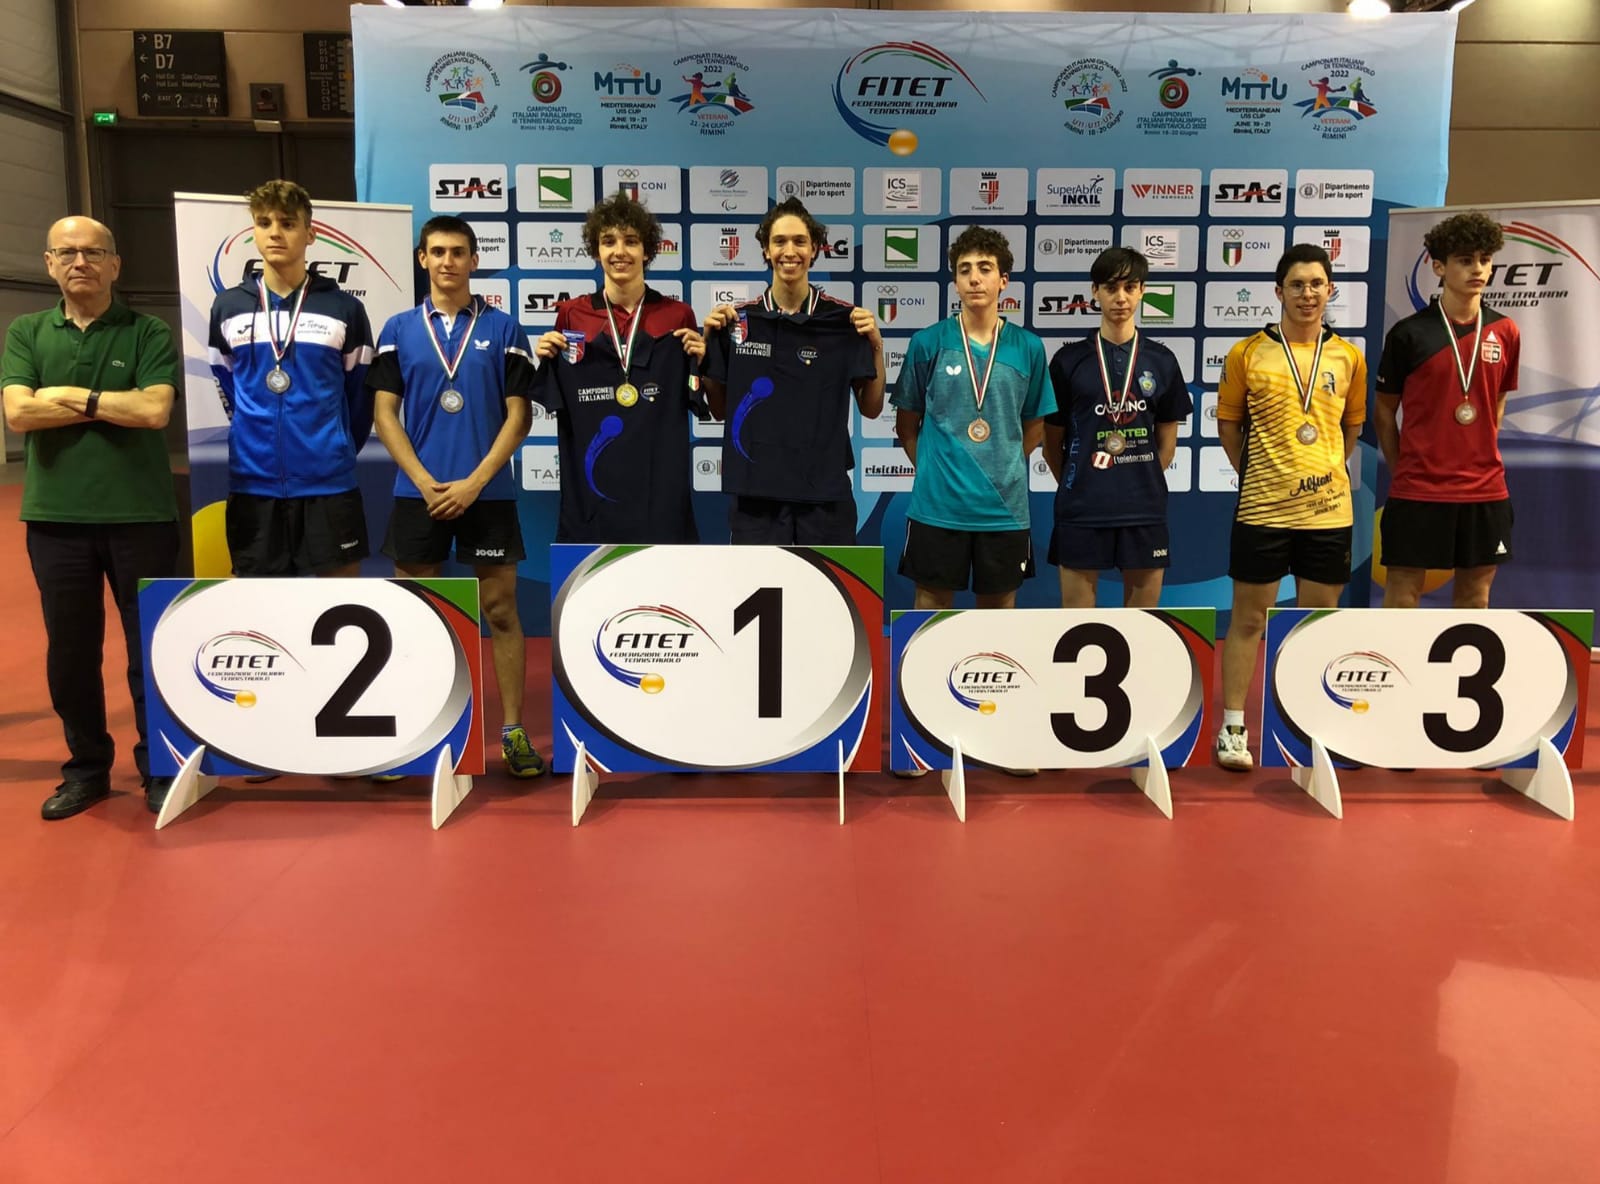 Campionati Italiani Giovanili Under 21 Under 17 e Under 11 podio del doppio maschile Under 17